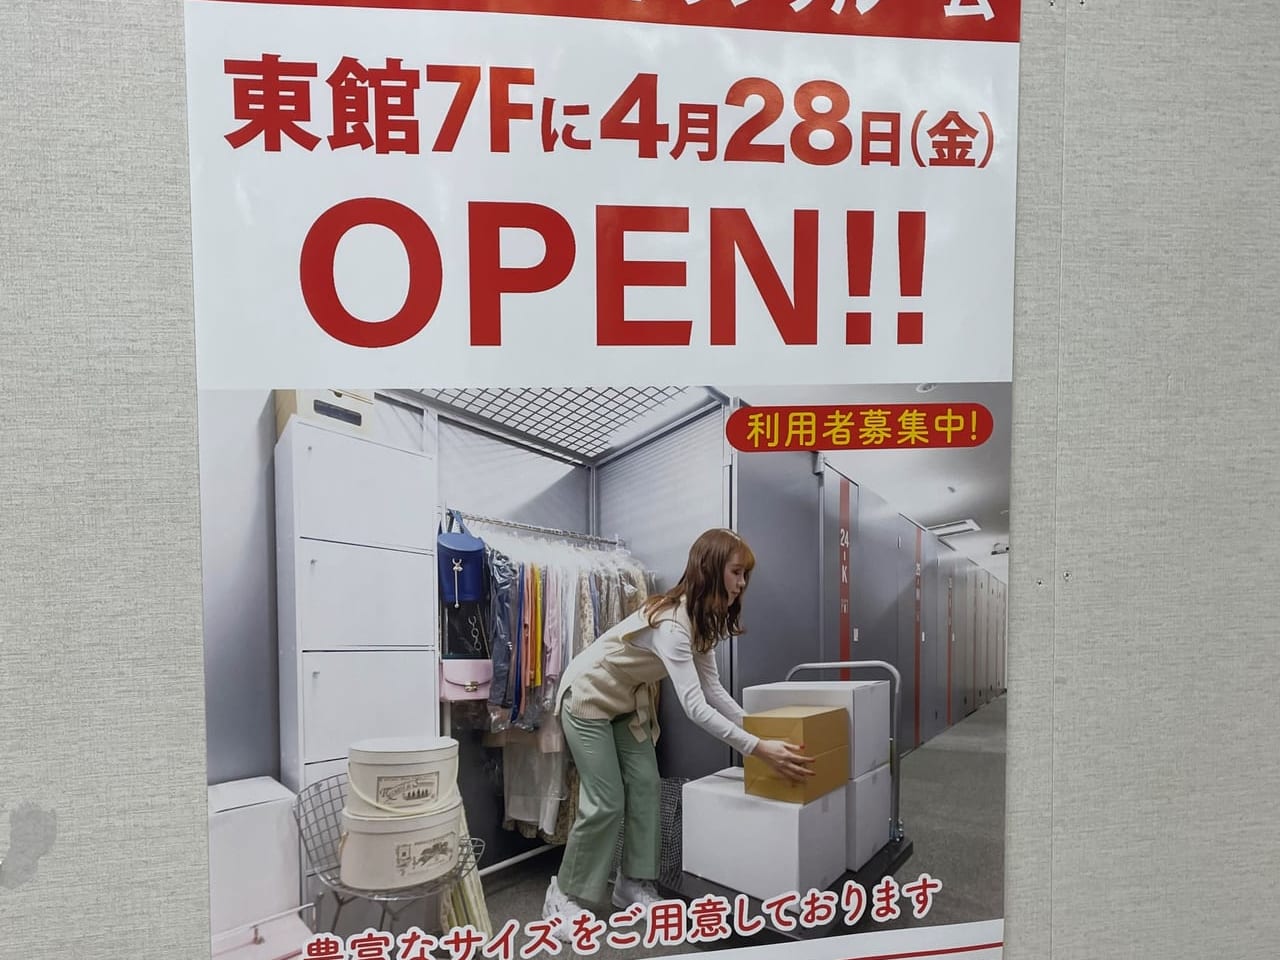 徳島アミコビルの5階にオープンしたトランクルーム。